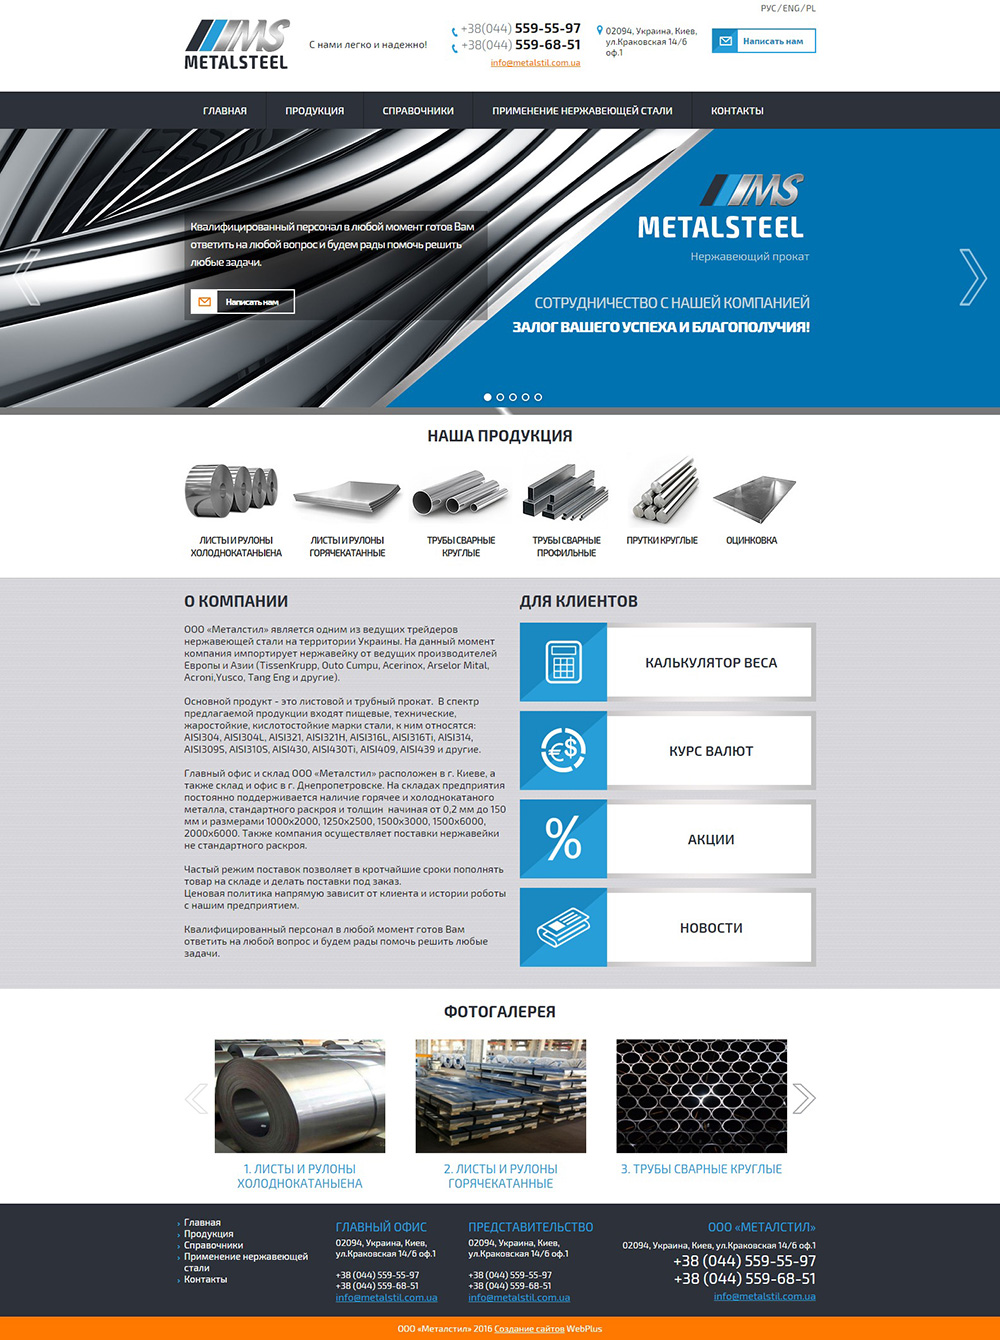 Создание корпоративного сайта для компании  ООО «Металстил Польша»